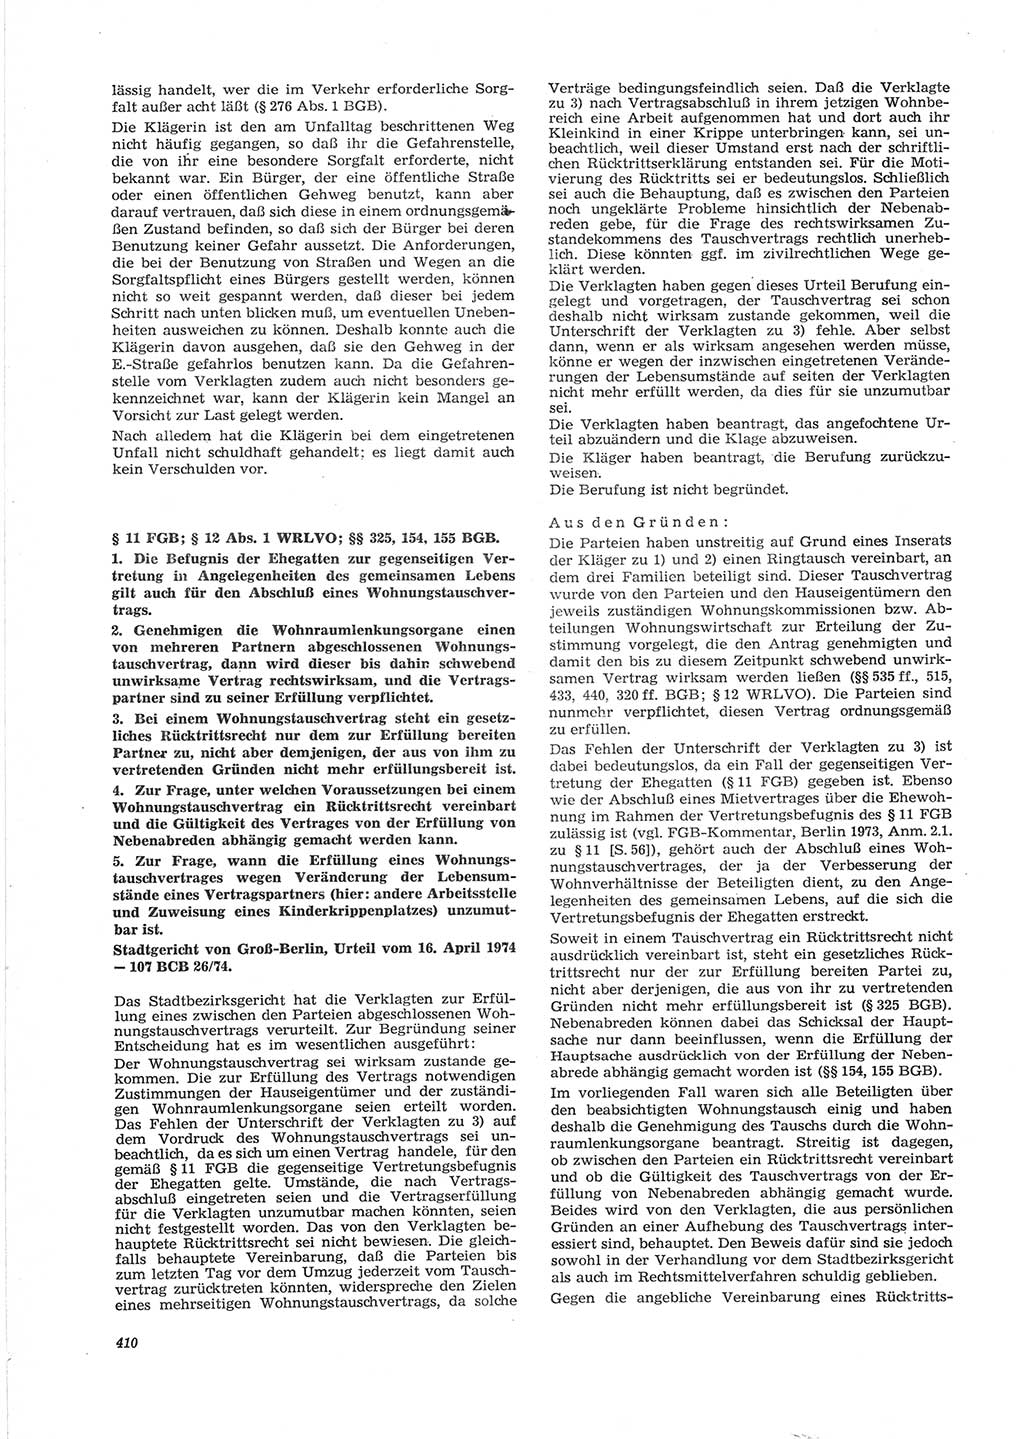 Neue Justiz (NJ), Zeitschrift für Recht und Rechtswissenschaft [Deutsche Demokratische Republik (DDR)], 28. Jahrgang 1974, Seite 410 (NJ DDR 1974, S. 410)